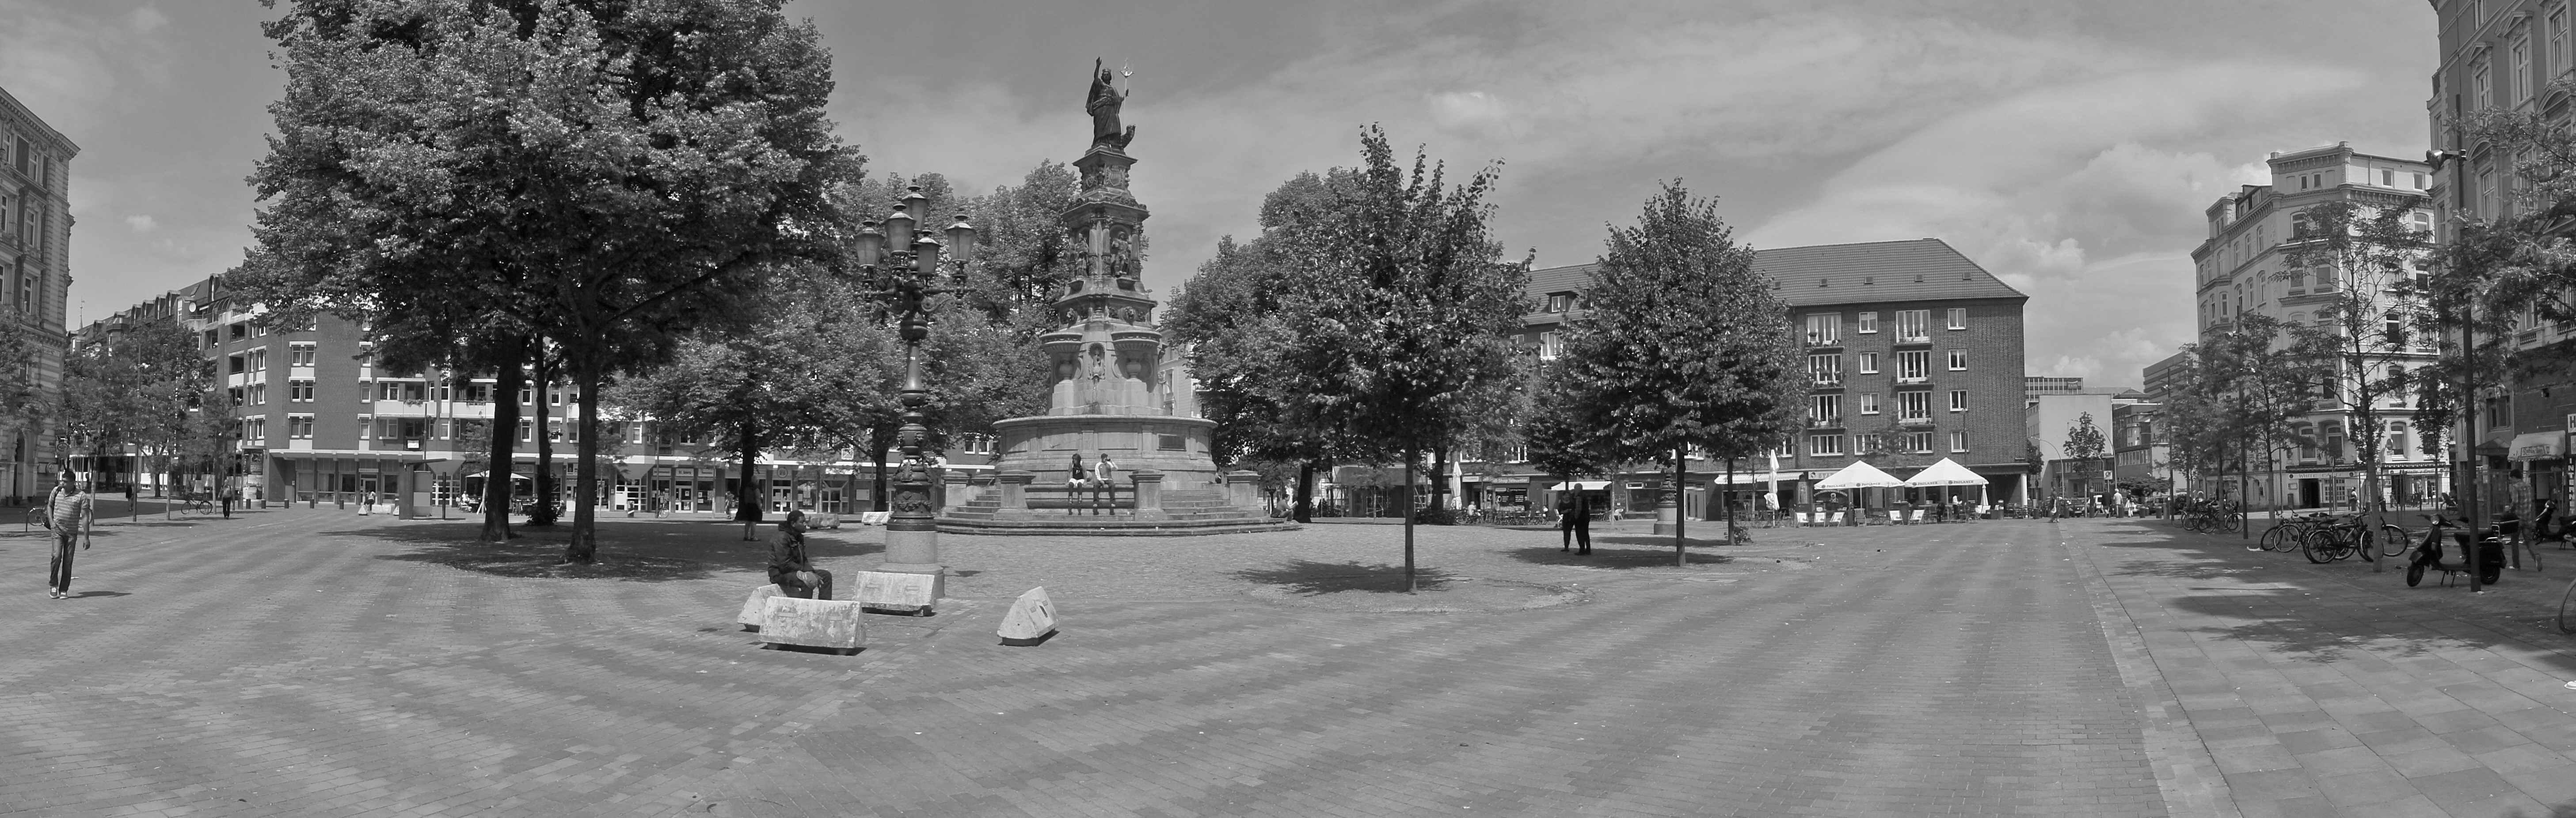 Schwarz-weiß Bild eines Parks mit einer großes Statue (Hansaplatz)